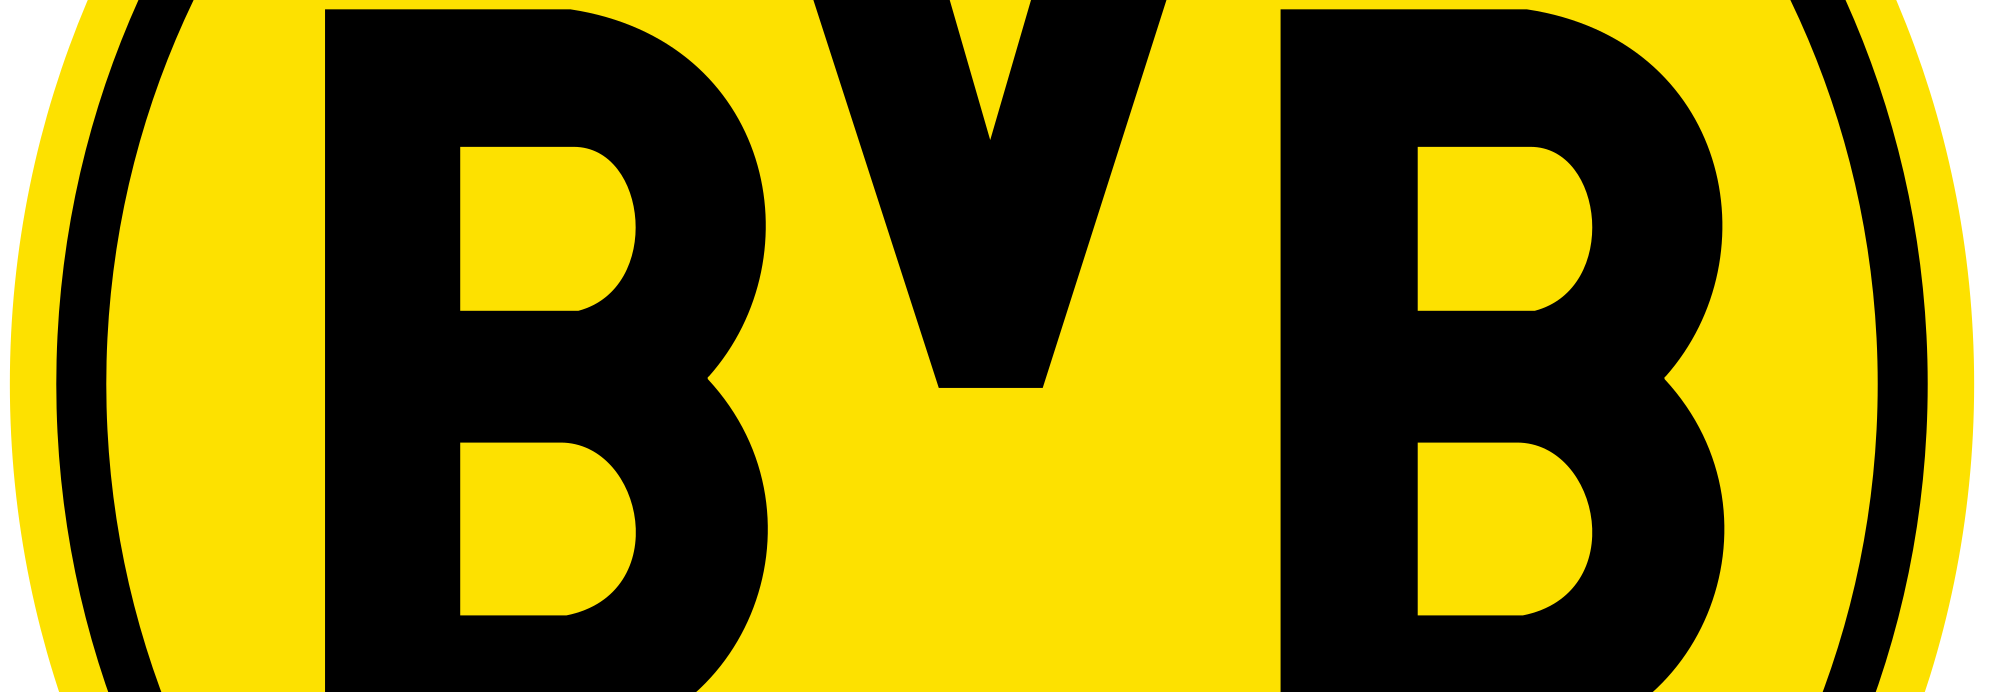 Borussia Dortmund Live Stream kostenlos & legal anschauen